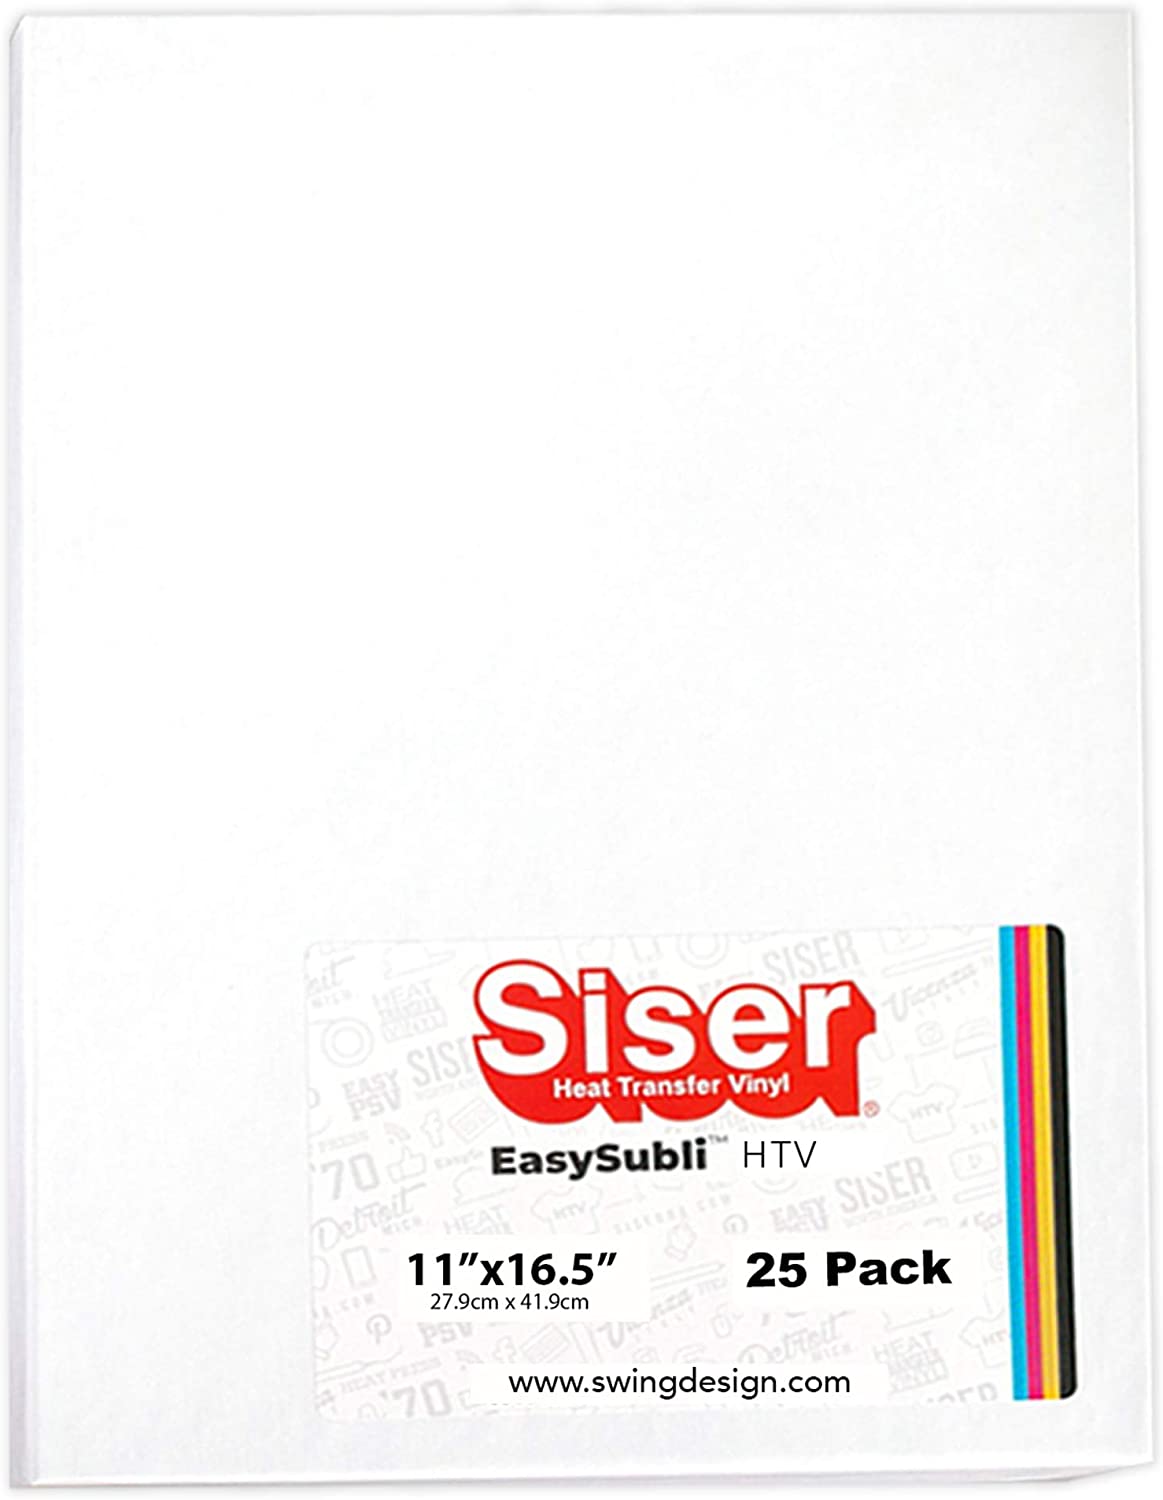 Siser EasySubli 25 Papel de transferencia de calor 27.9X41.91 cms